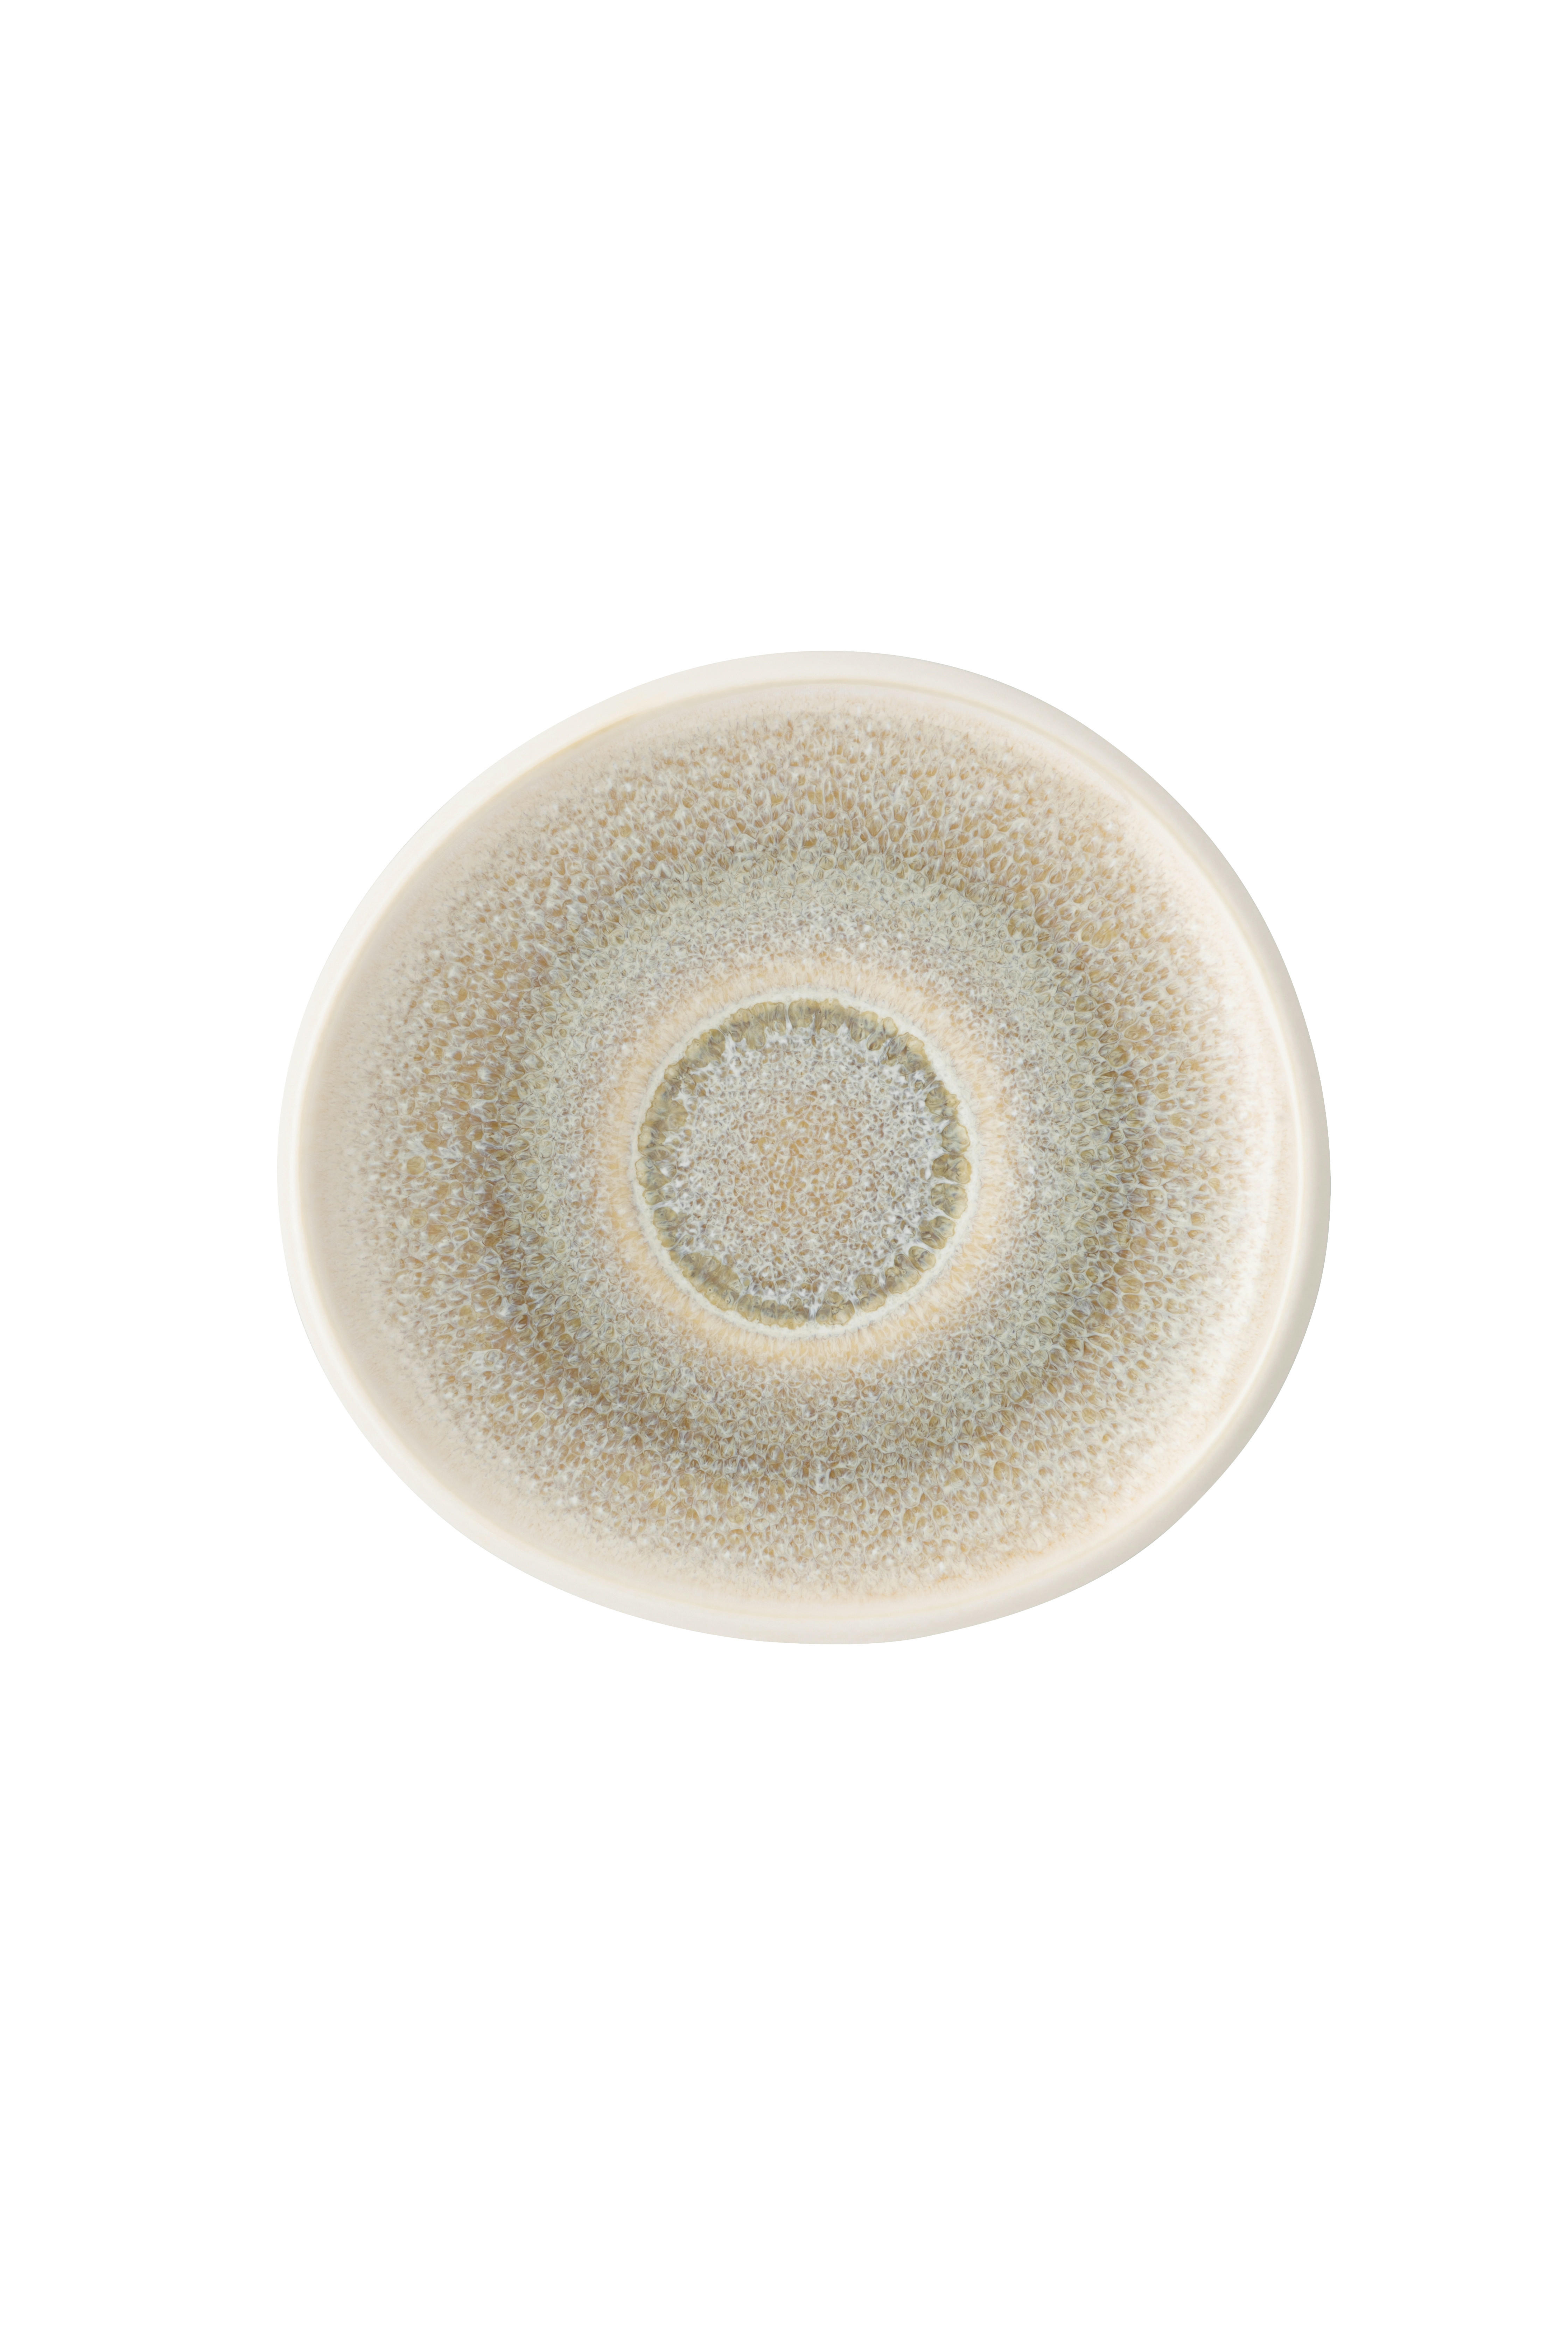 ESPRESSO-UNTERTASSE Junto Dune  - Beige, LIFESTYLE, Keramik (11,8/11,2/1,4cm) - Rosenthal